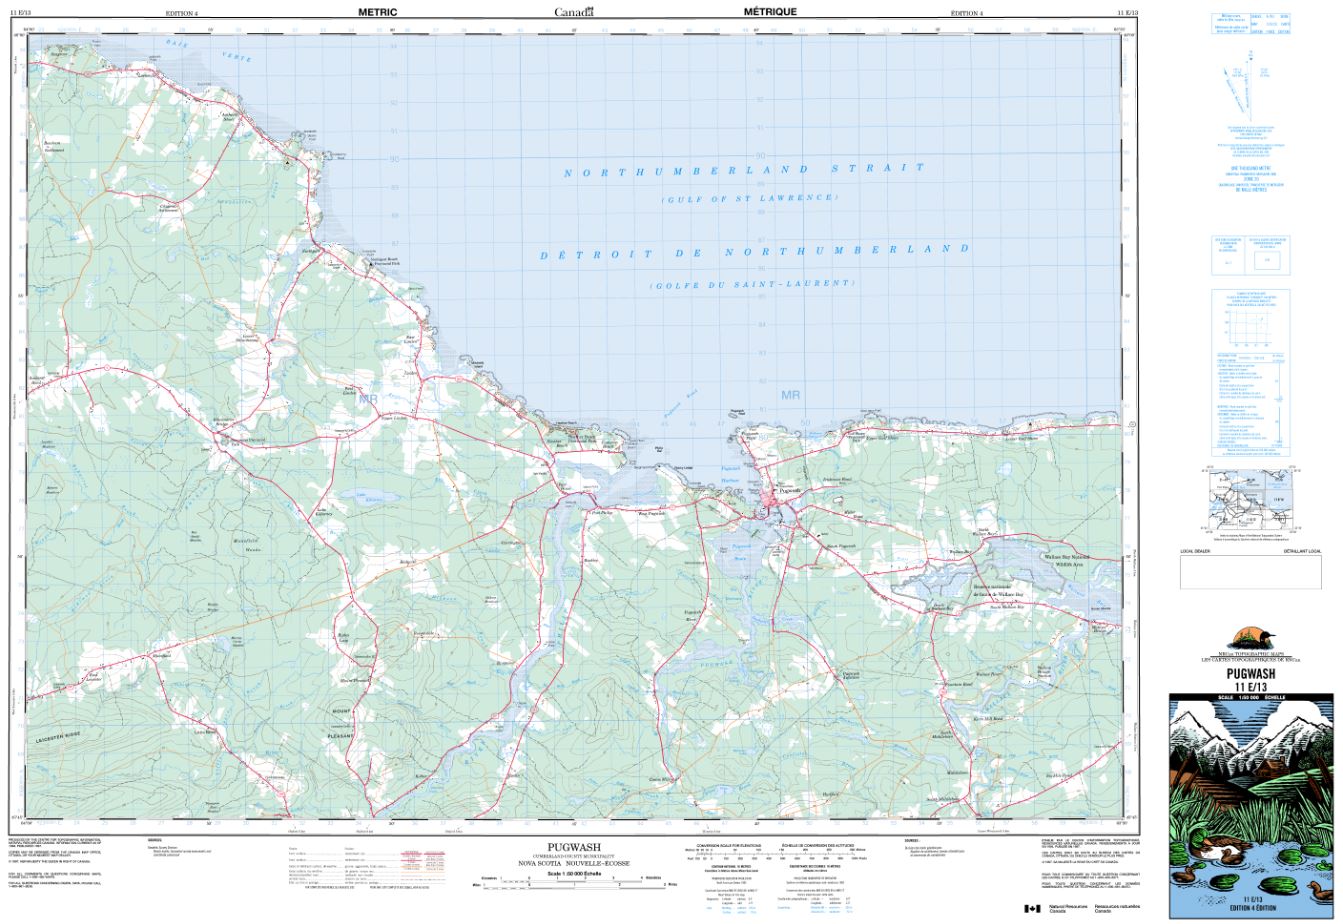 11E/13 Pugwash Topographic Map Nova Scotia Tyvek